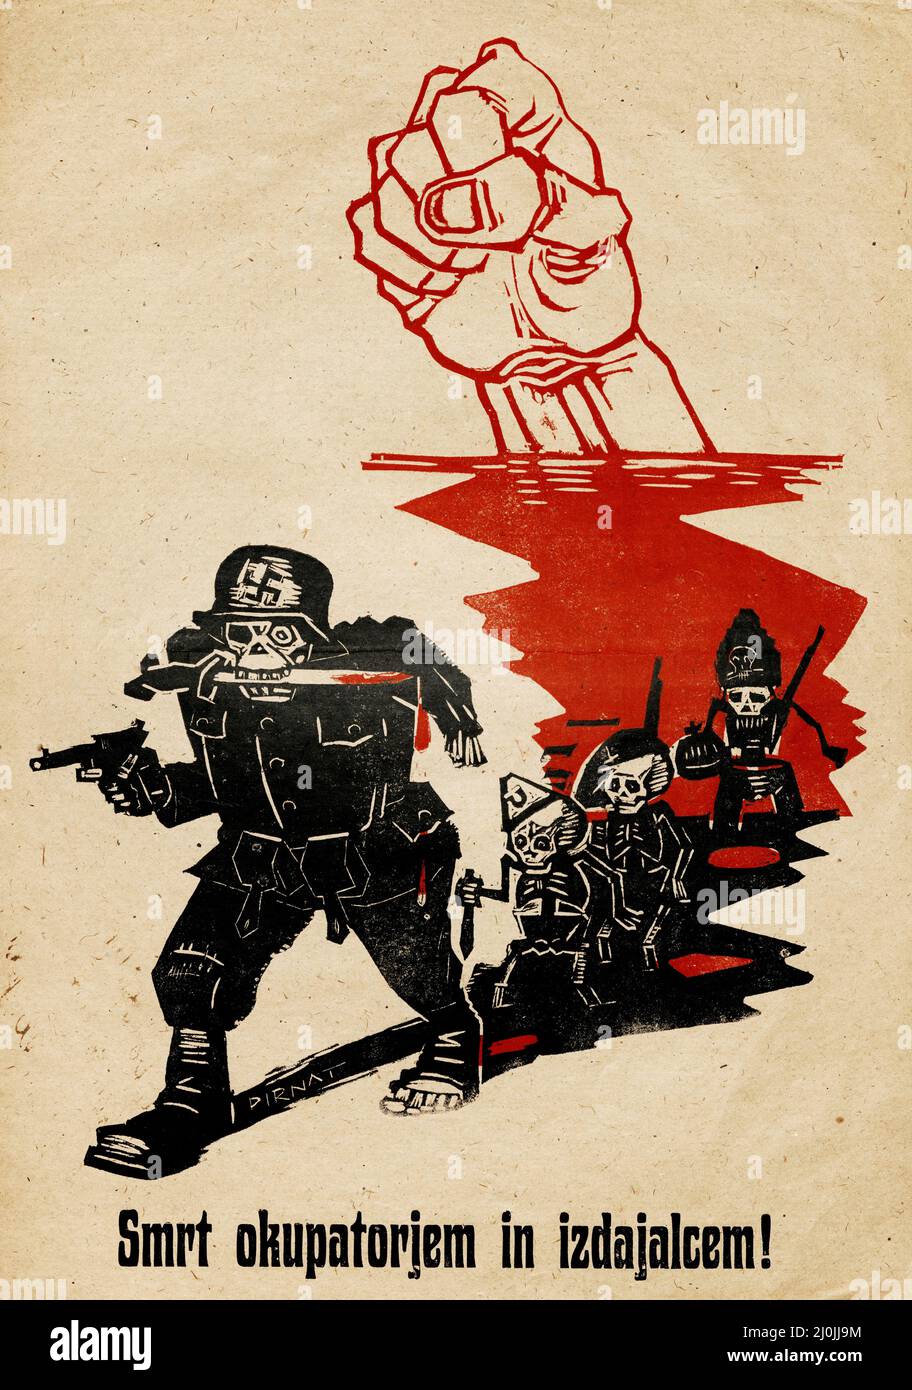 Propagande russe - affiche russe ancienne - affiche de la mort pour les occupants et les traîtres! 1944. Affiche slovène. Banque D'Images